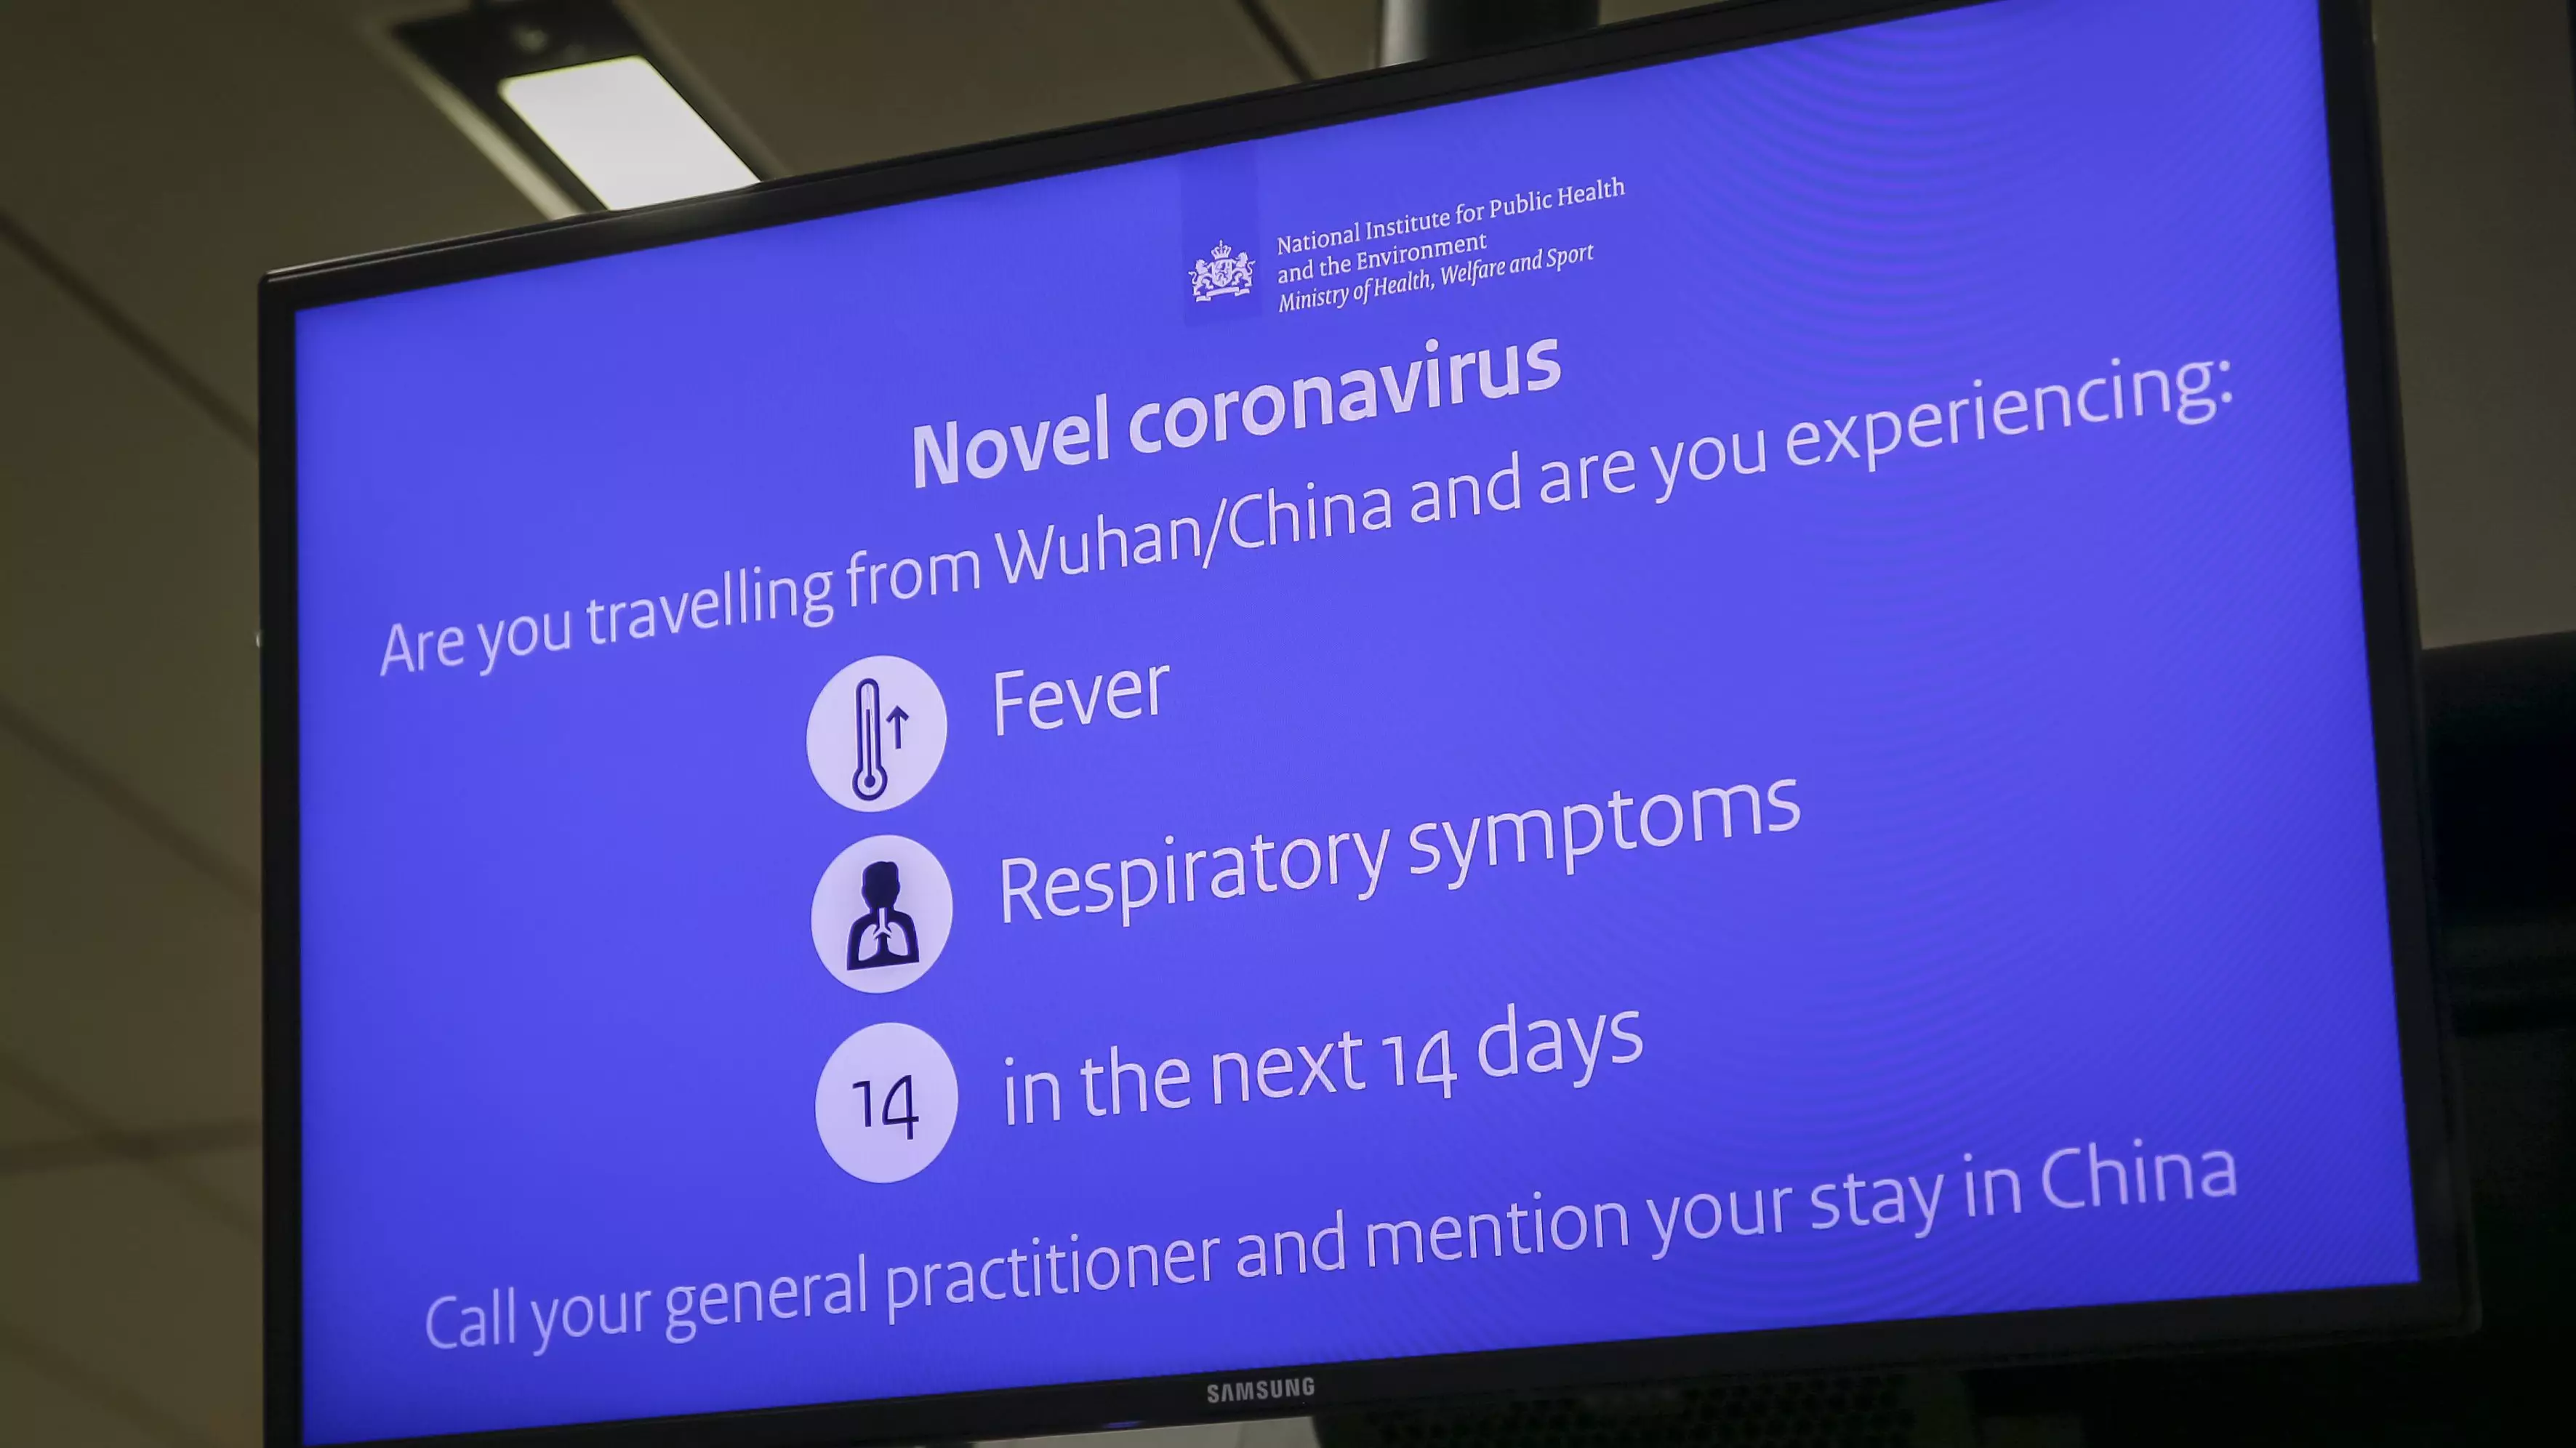 The Third Case Of Coronavirus In The UK Has Been Confirmed